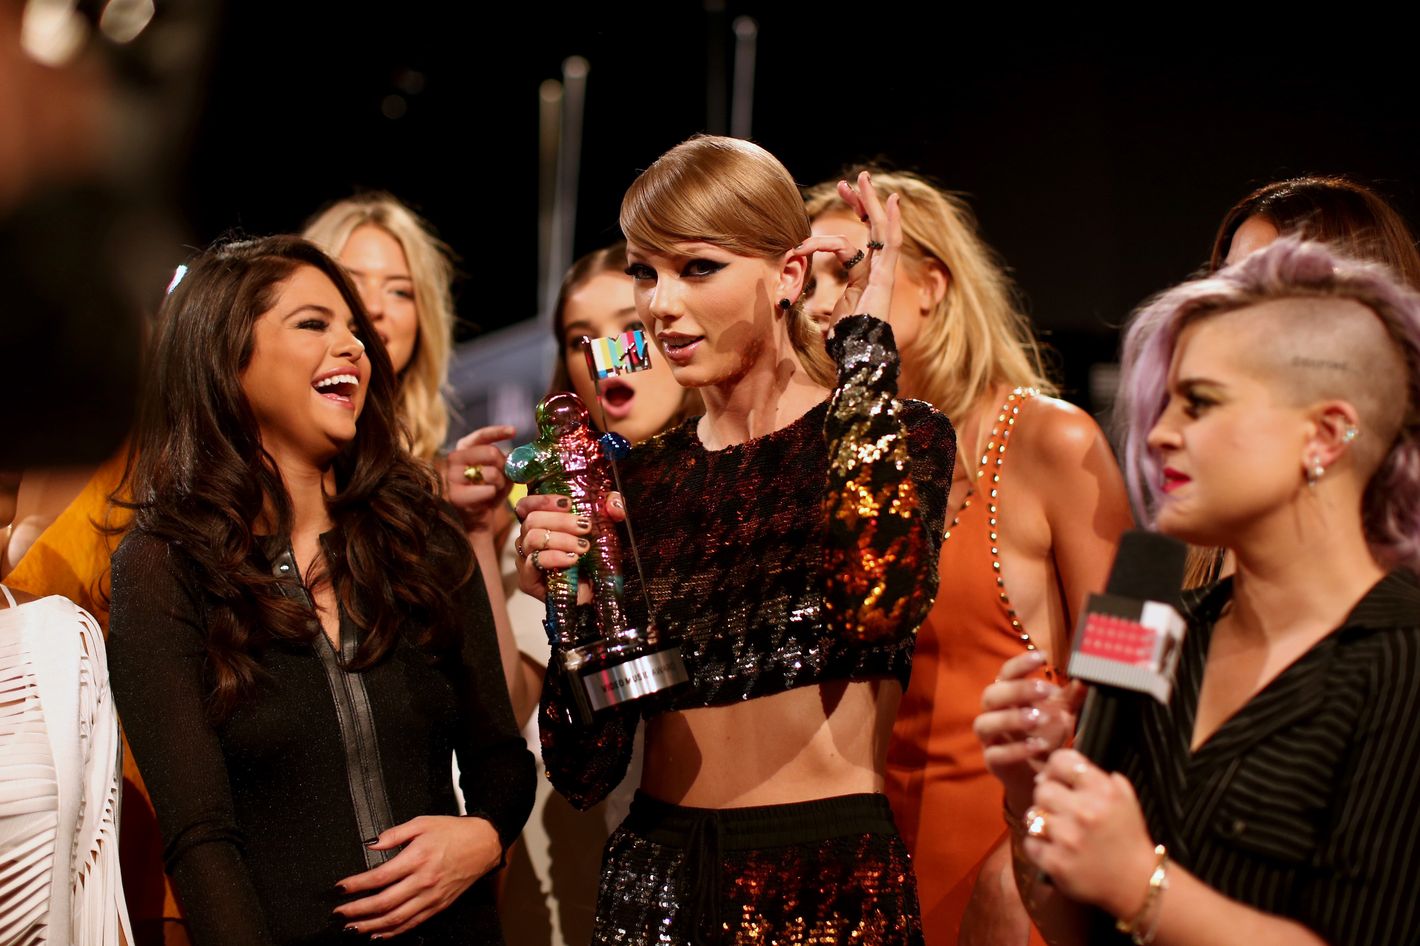 Who Won MTV Music Awards 2015